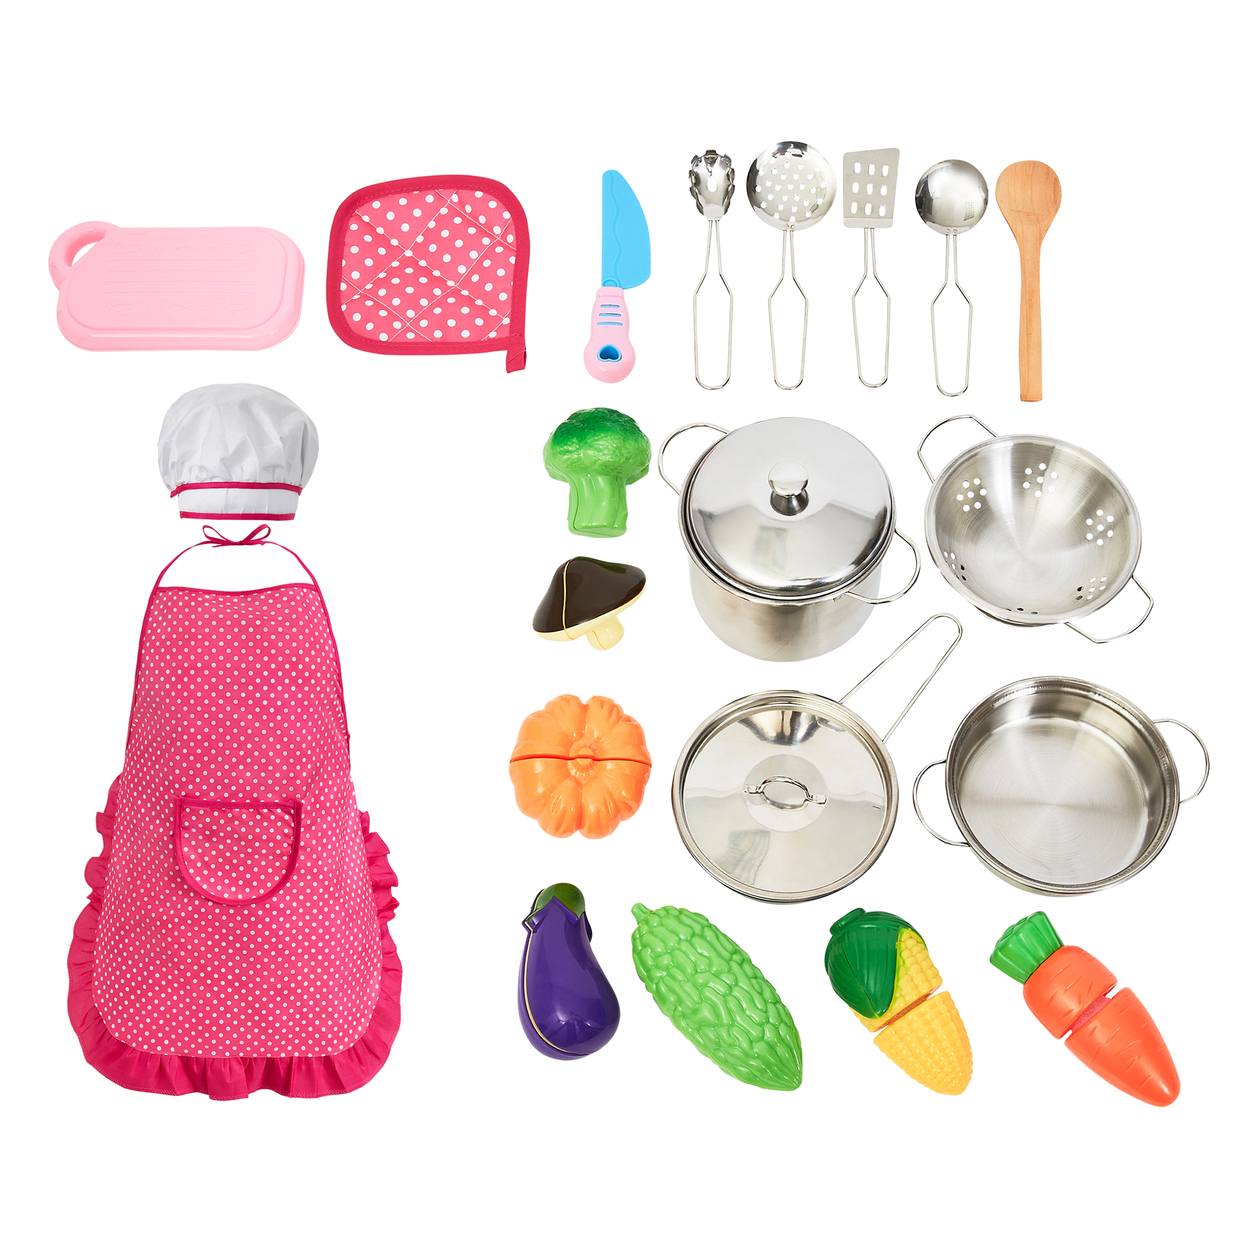 23-Piece Child Chef Set Play Kitchen Accessories, Cookware, Veggies, Utensils